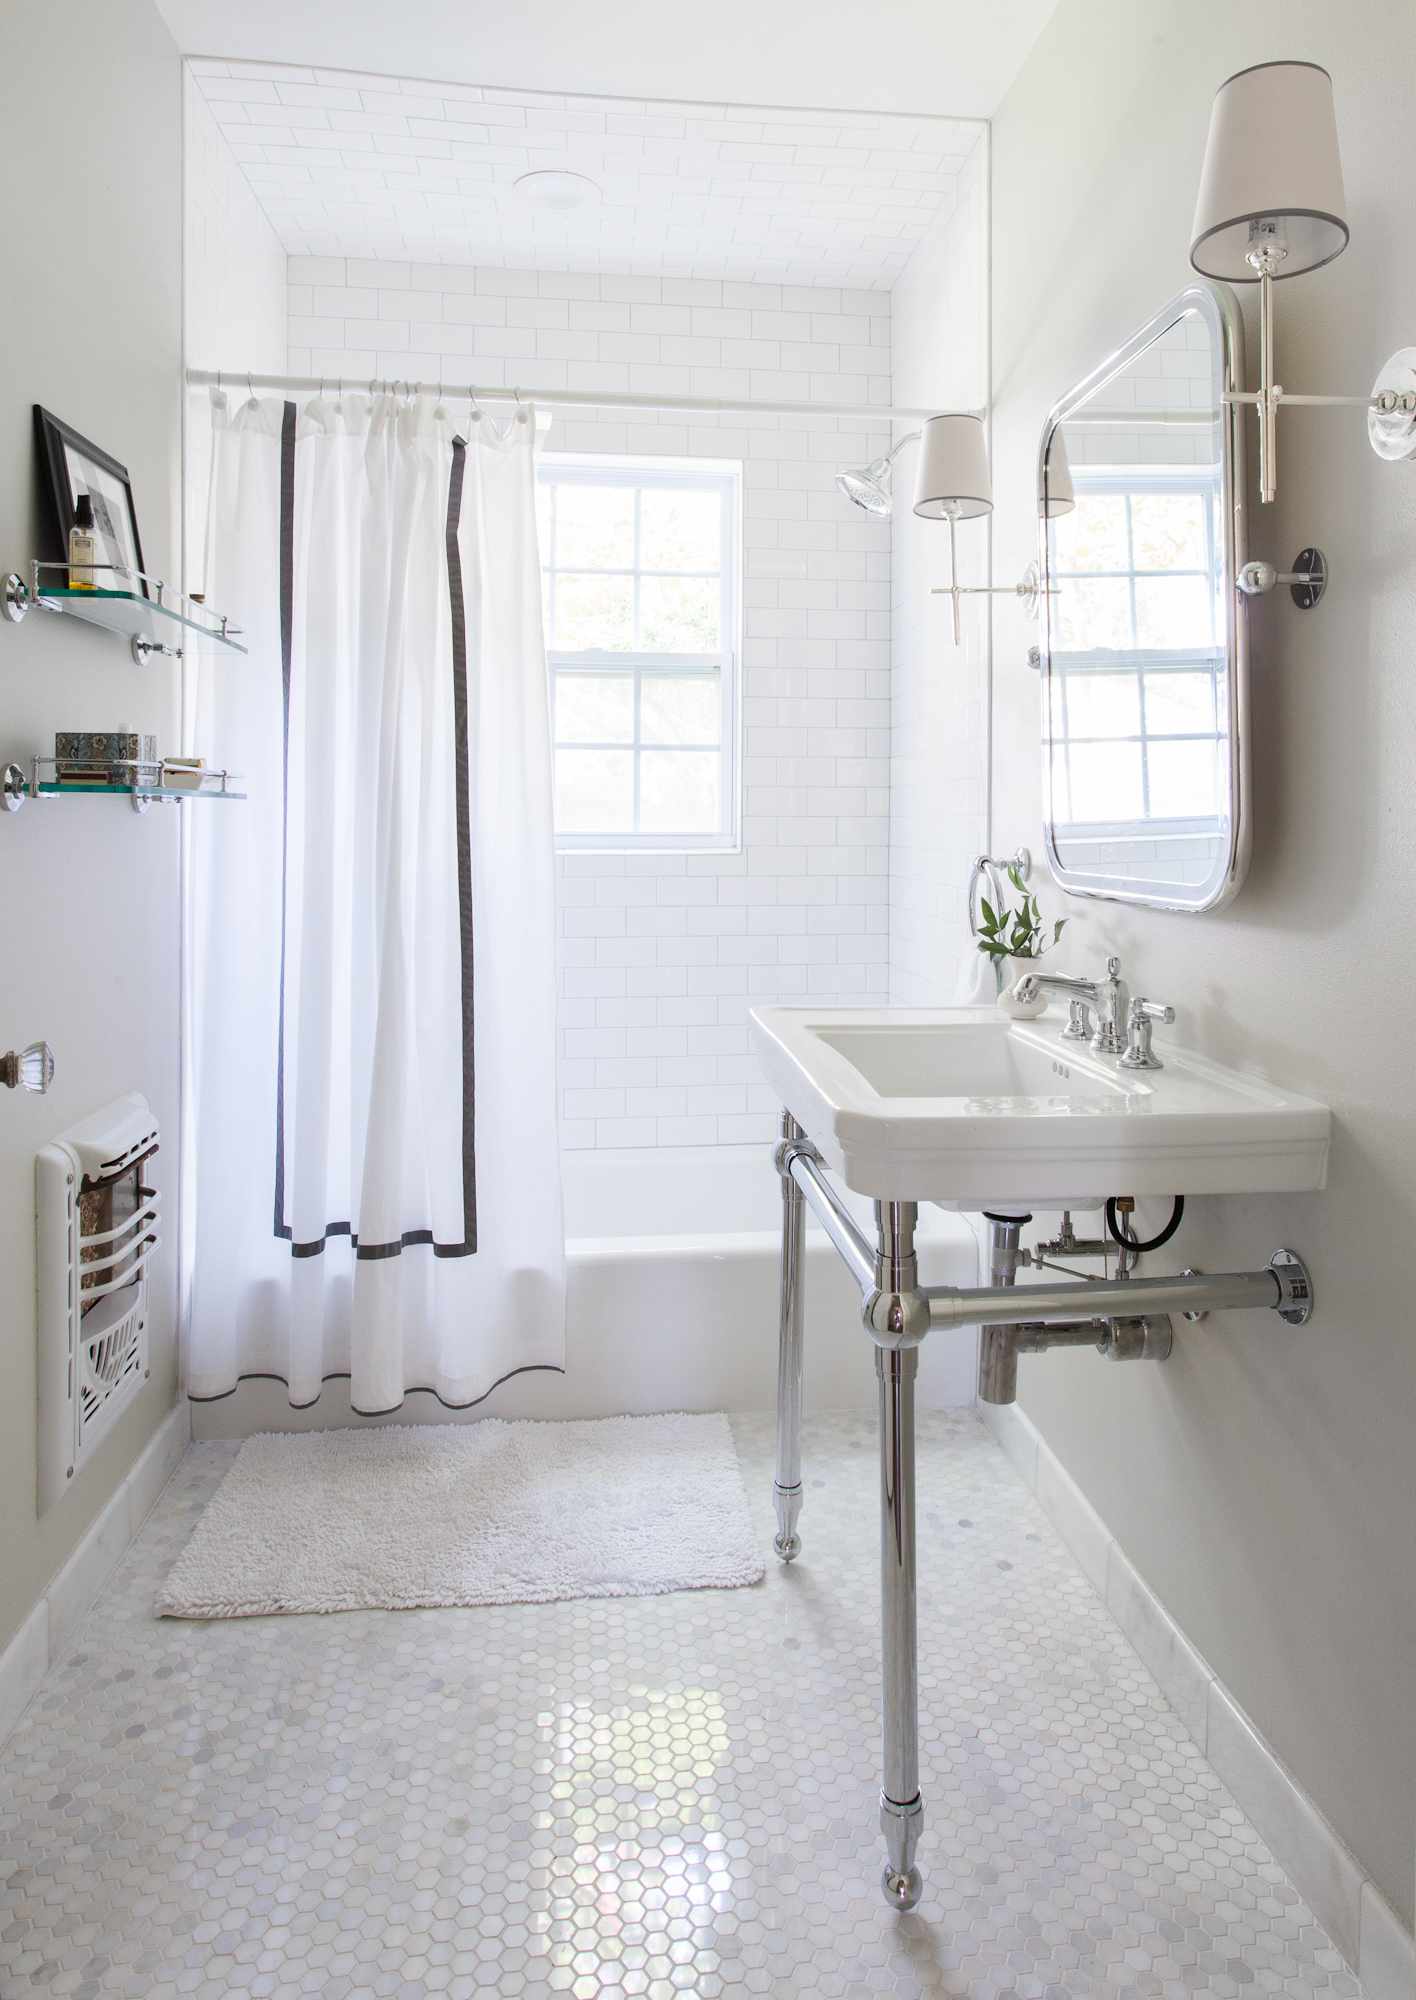 baño gris y blanco estilo vintage